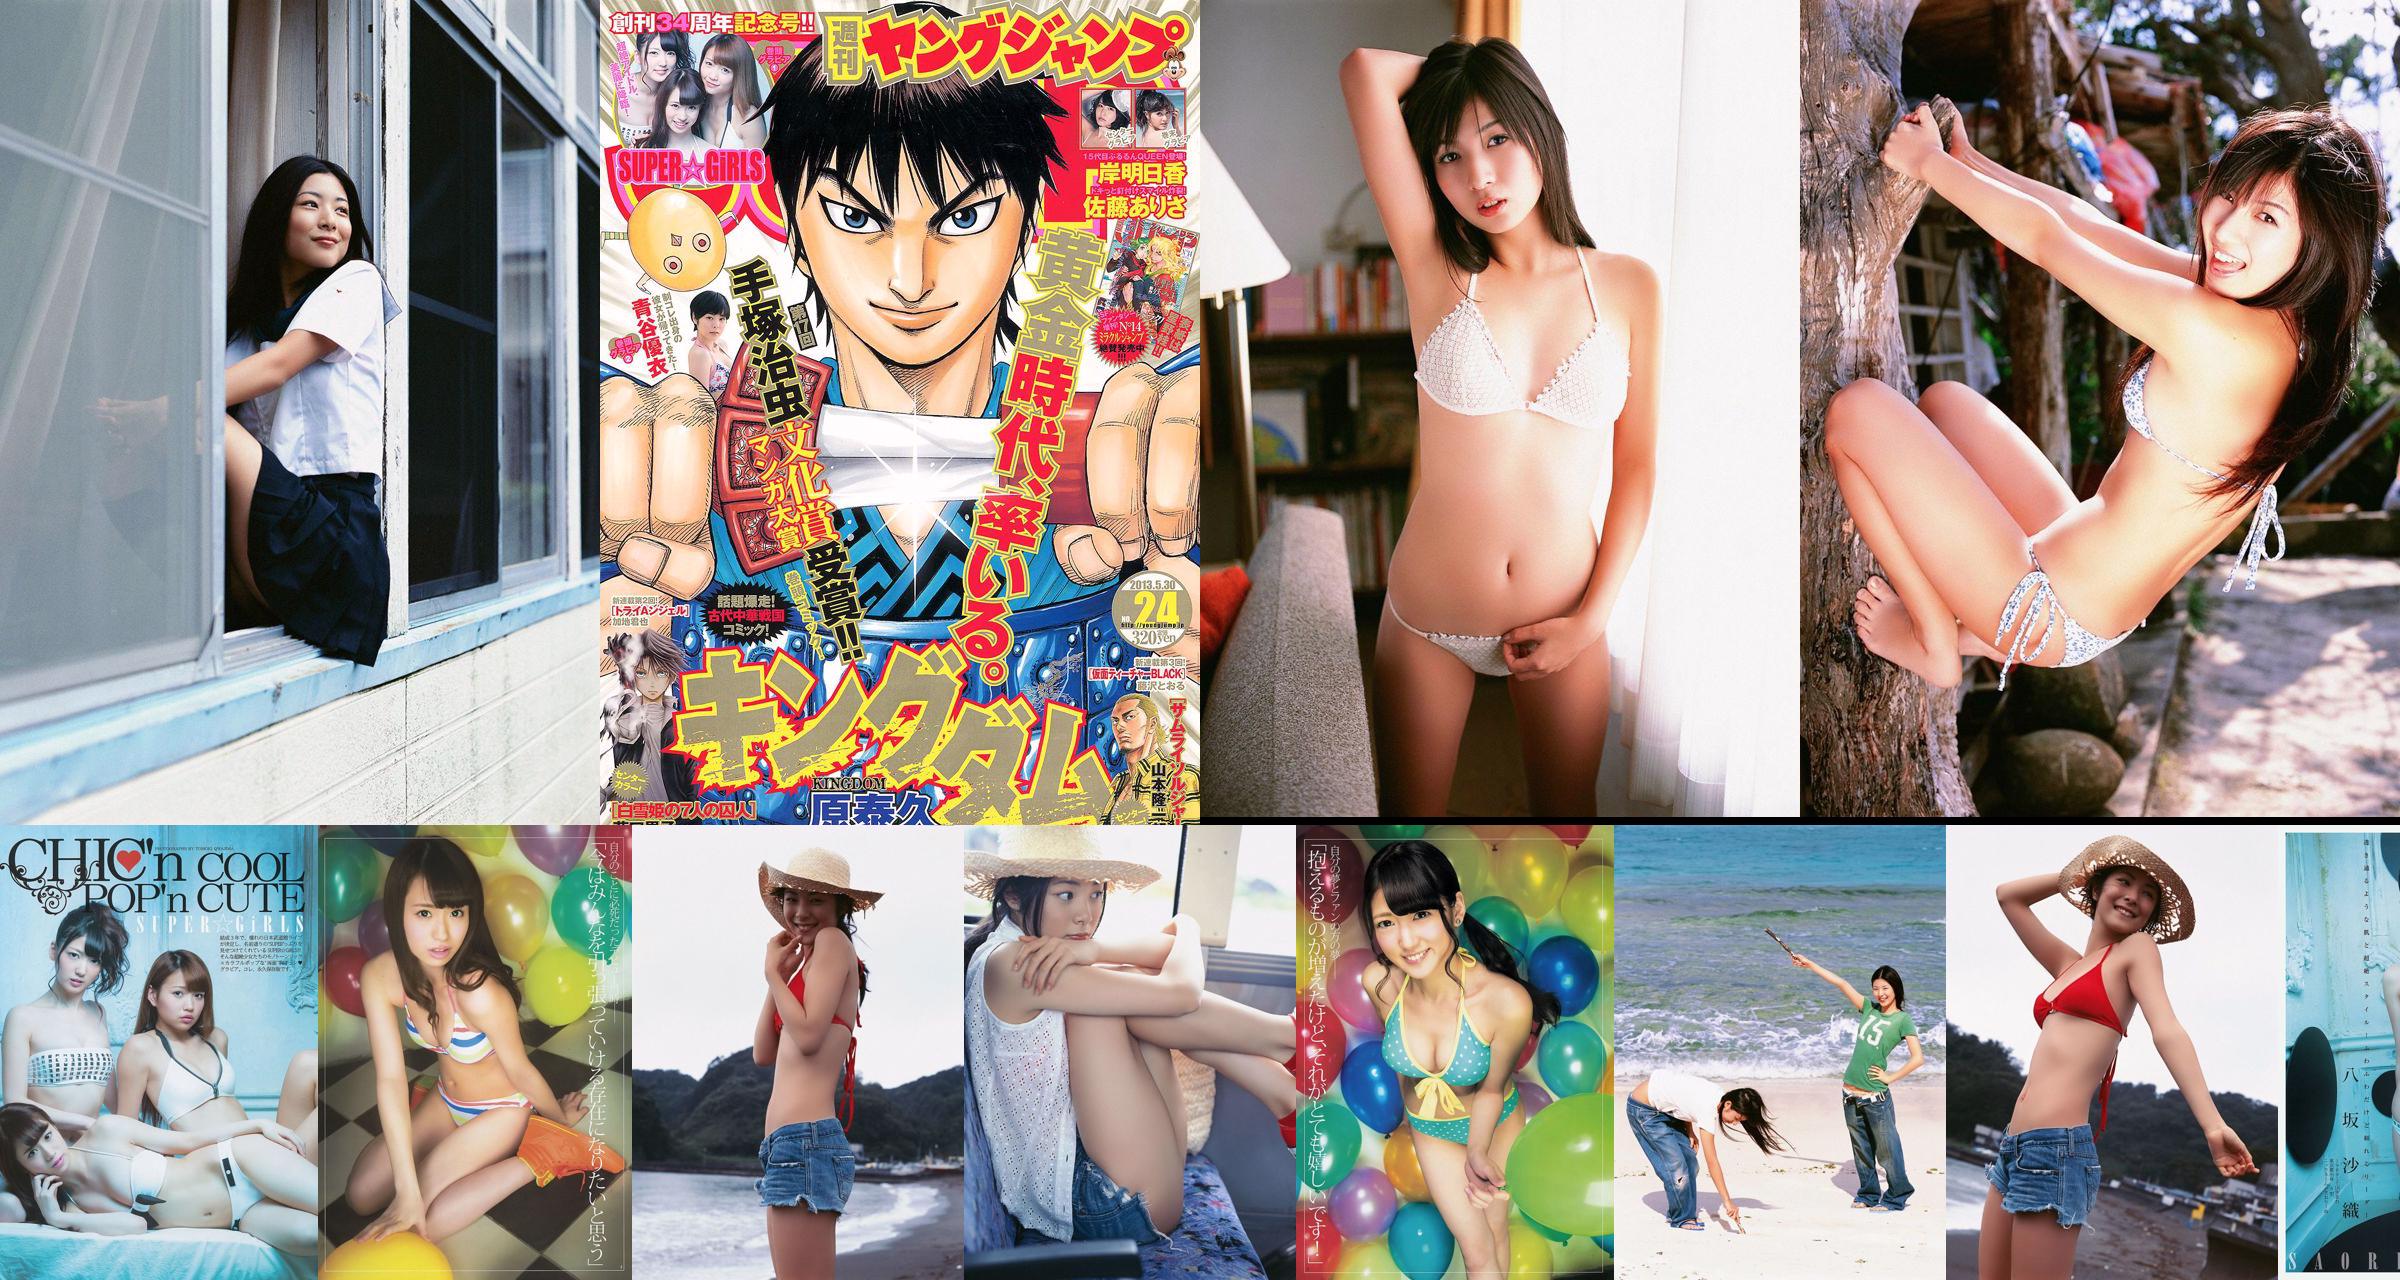 SUPER ☆ GiRLS Yui Aoya Asuka Kishi Arisa Sato [Weekly Young Jump] 2013 No.24 Photograph No.9a7507 Page 4